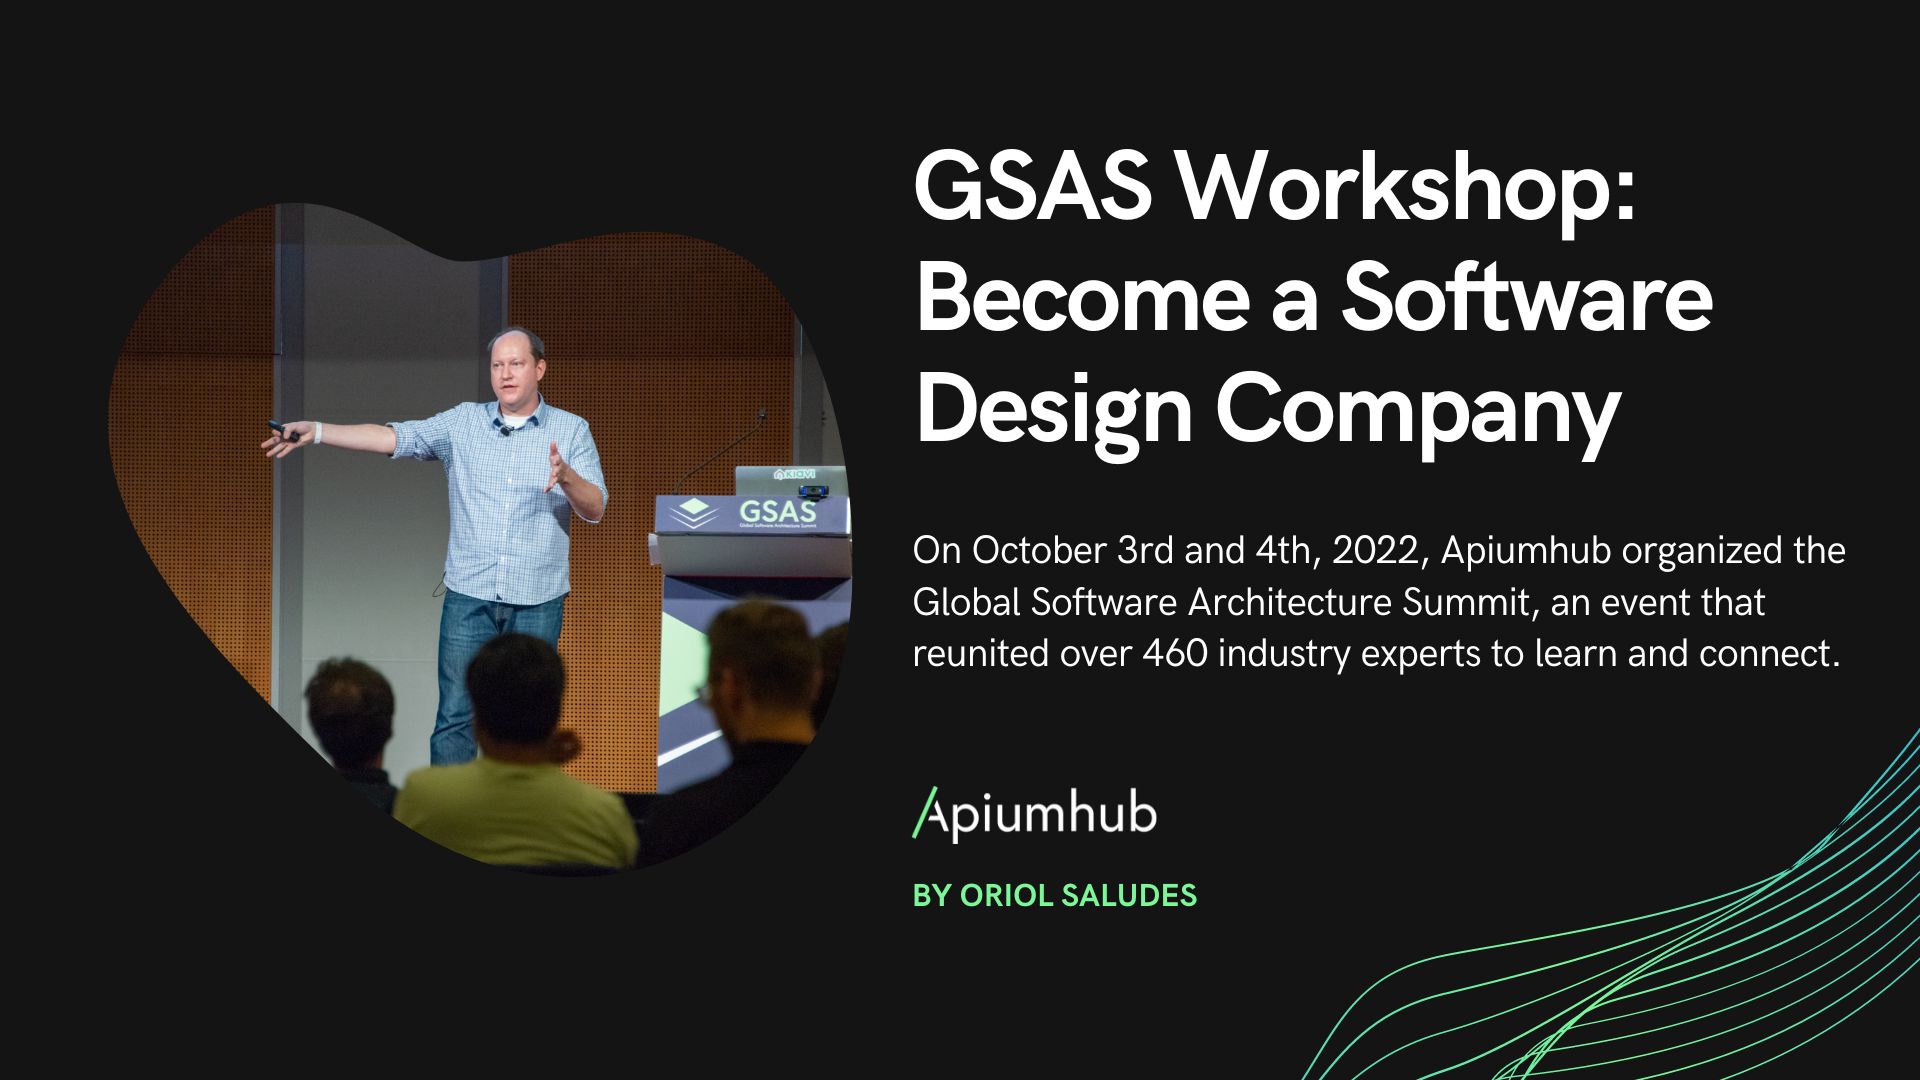 GSAS workshop: become a software design company